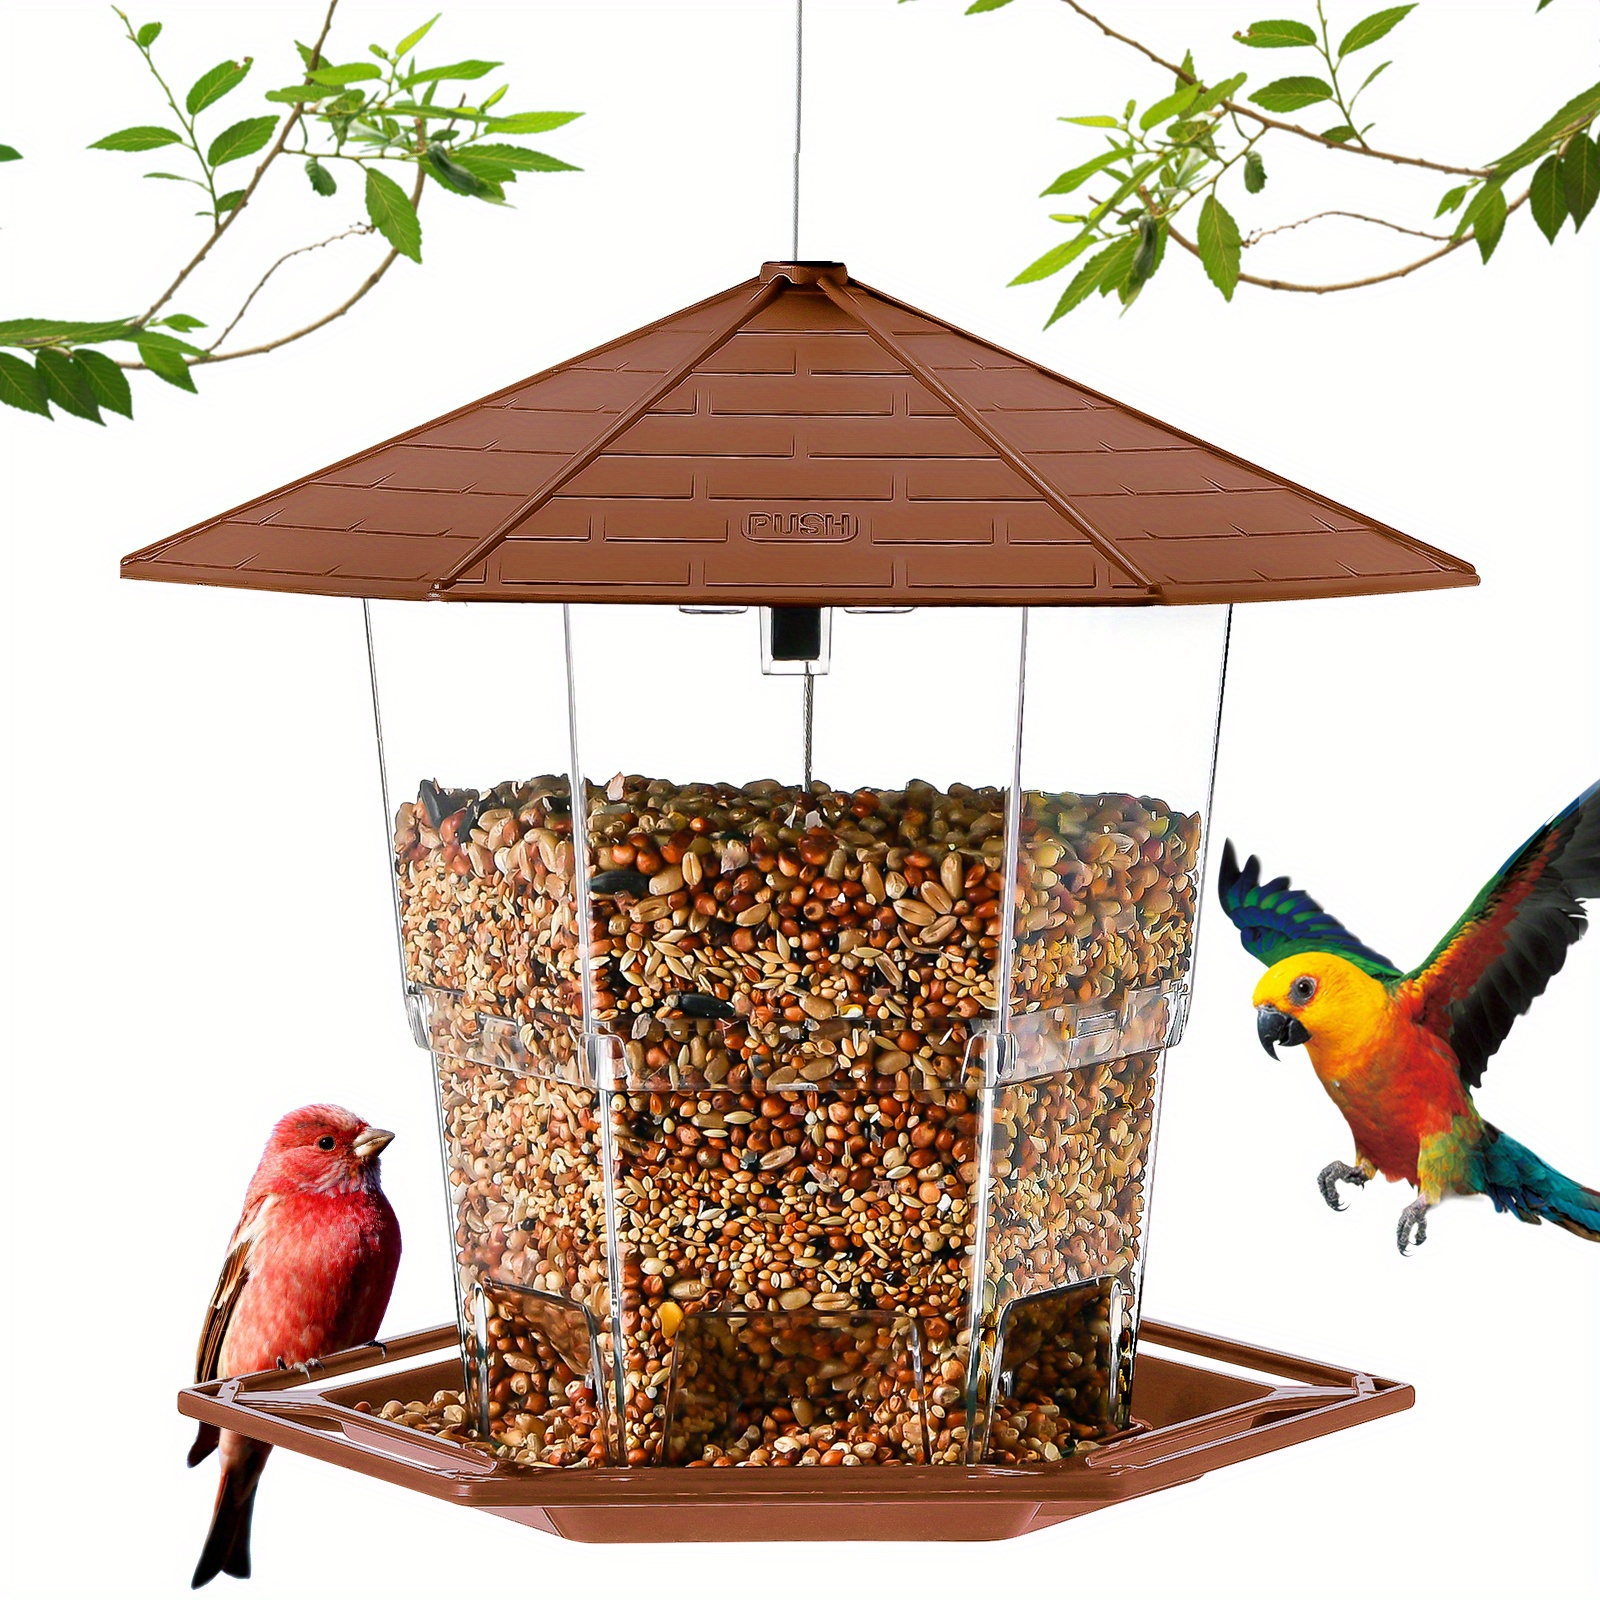 Comedero de Exterior para Pájaros JOK 1, Refugio Pájaros Silvestres, Apto  para Alimentación Semillas Frutos Secos